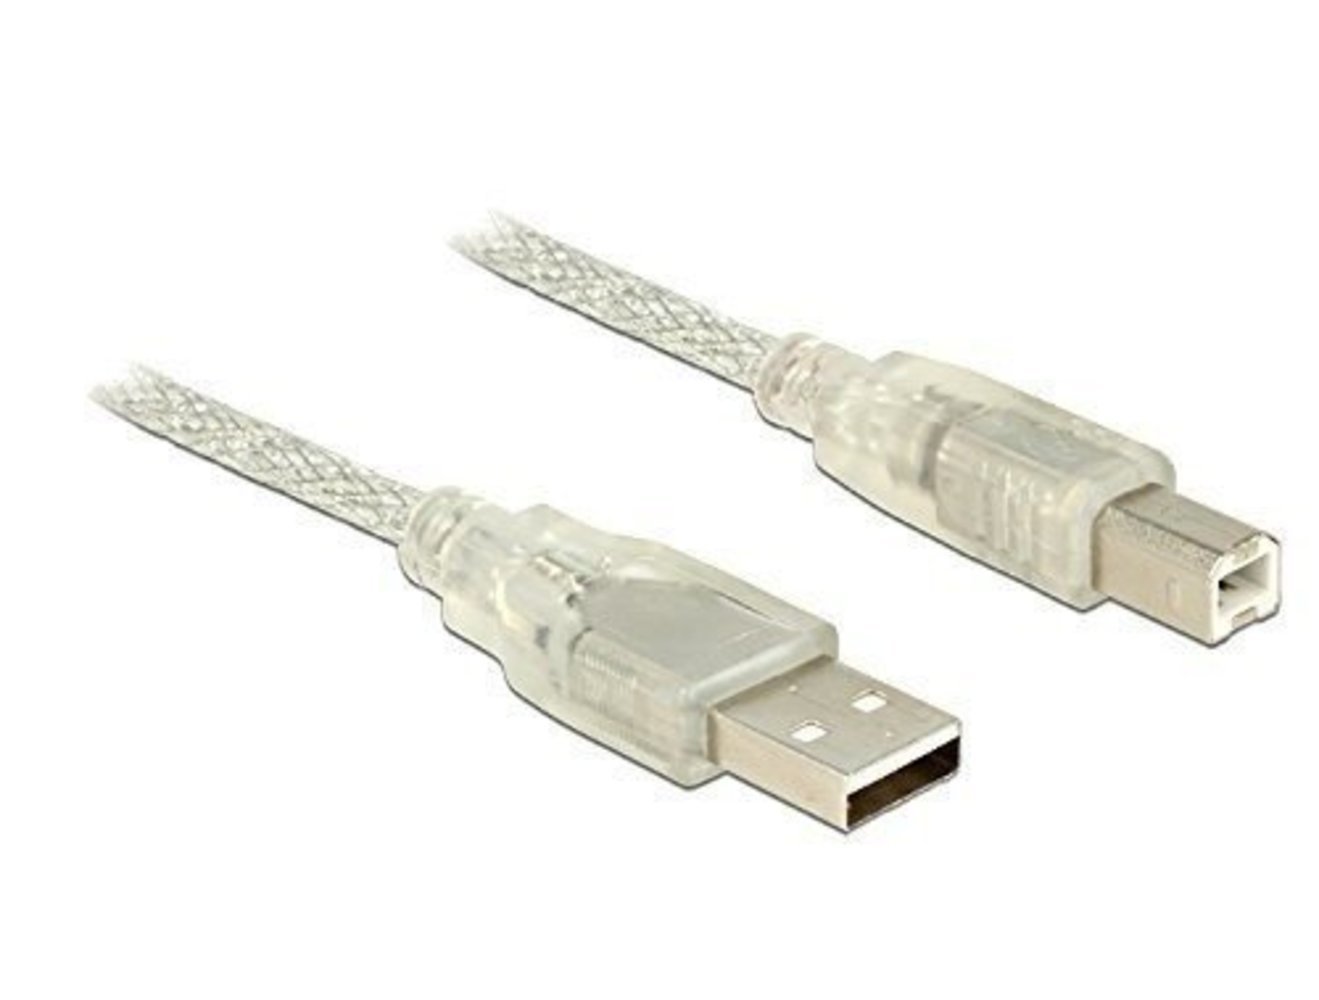 DELOCK Kabel USB 2.0 Typ-A Stecker > USB 2.0 Typ-B Stecker 5m transparent - Hochwertiges USB-Verbindungskabel für schnellen Datentransfer